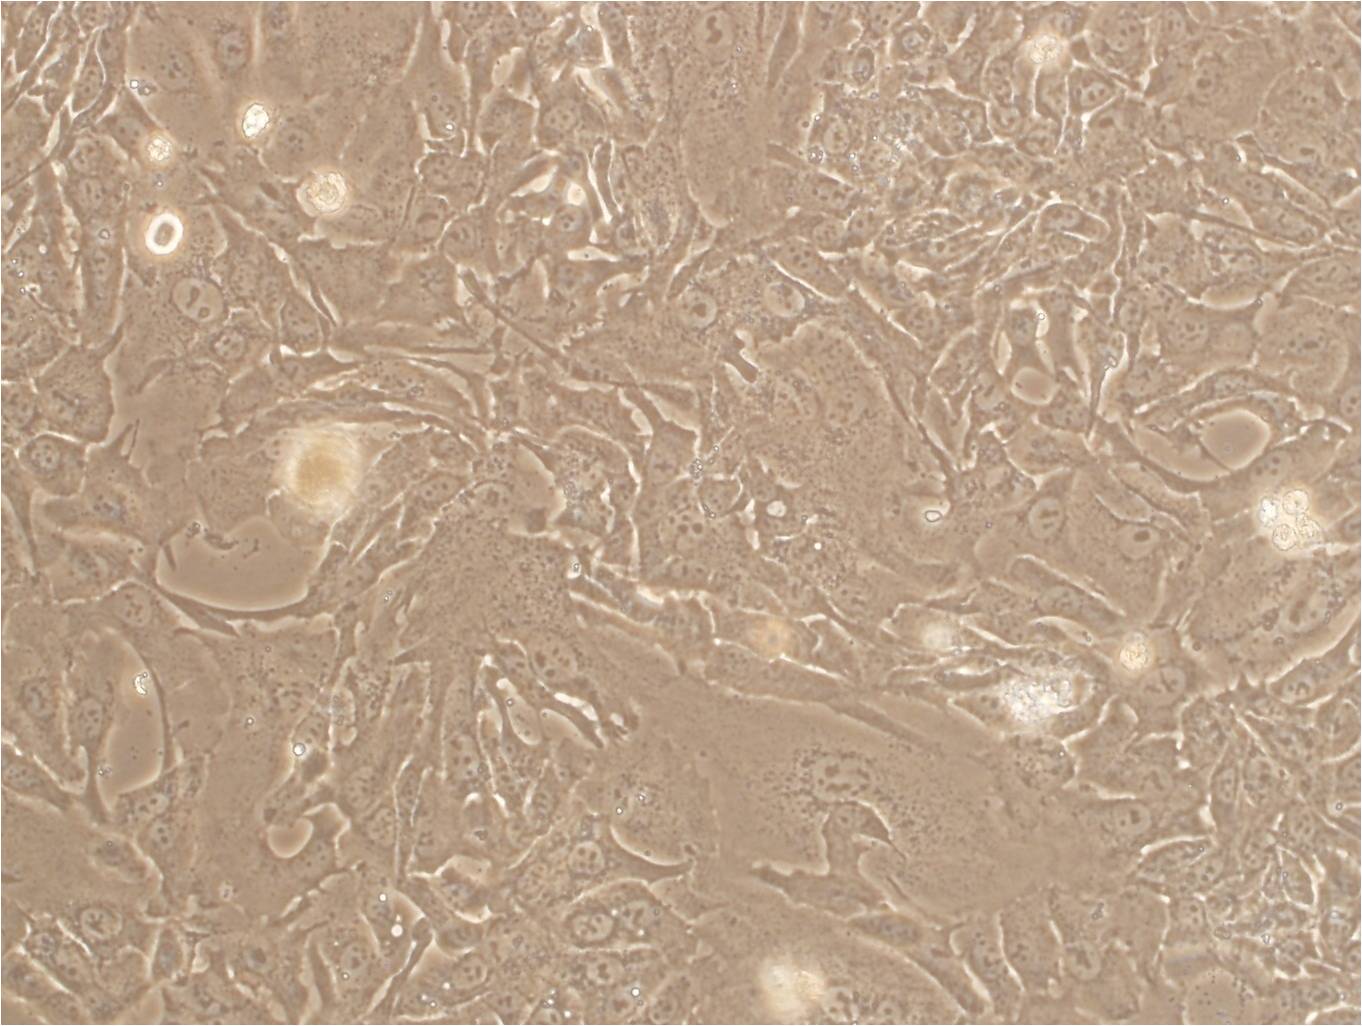 HCC1599 Fresh Cells|人乳腺导管癌细胞(送STR基因图谱),HCC1599 Fresh Cells